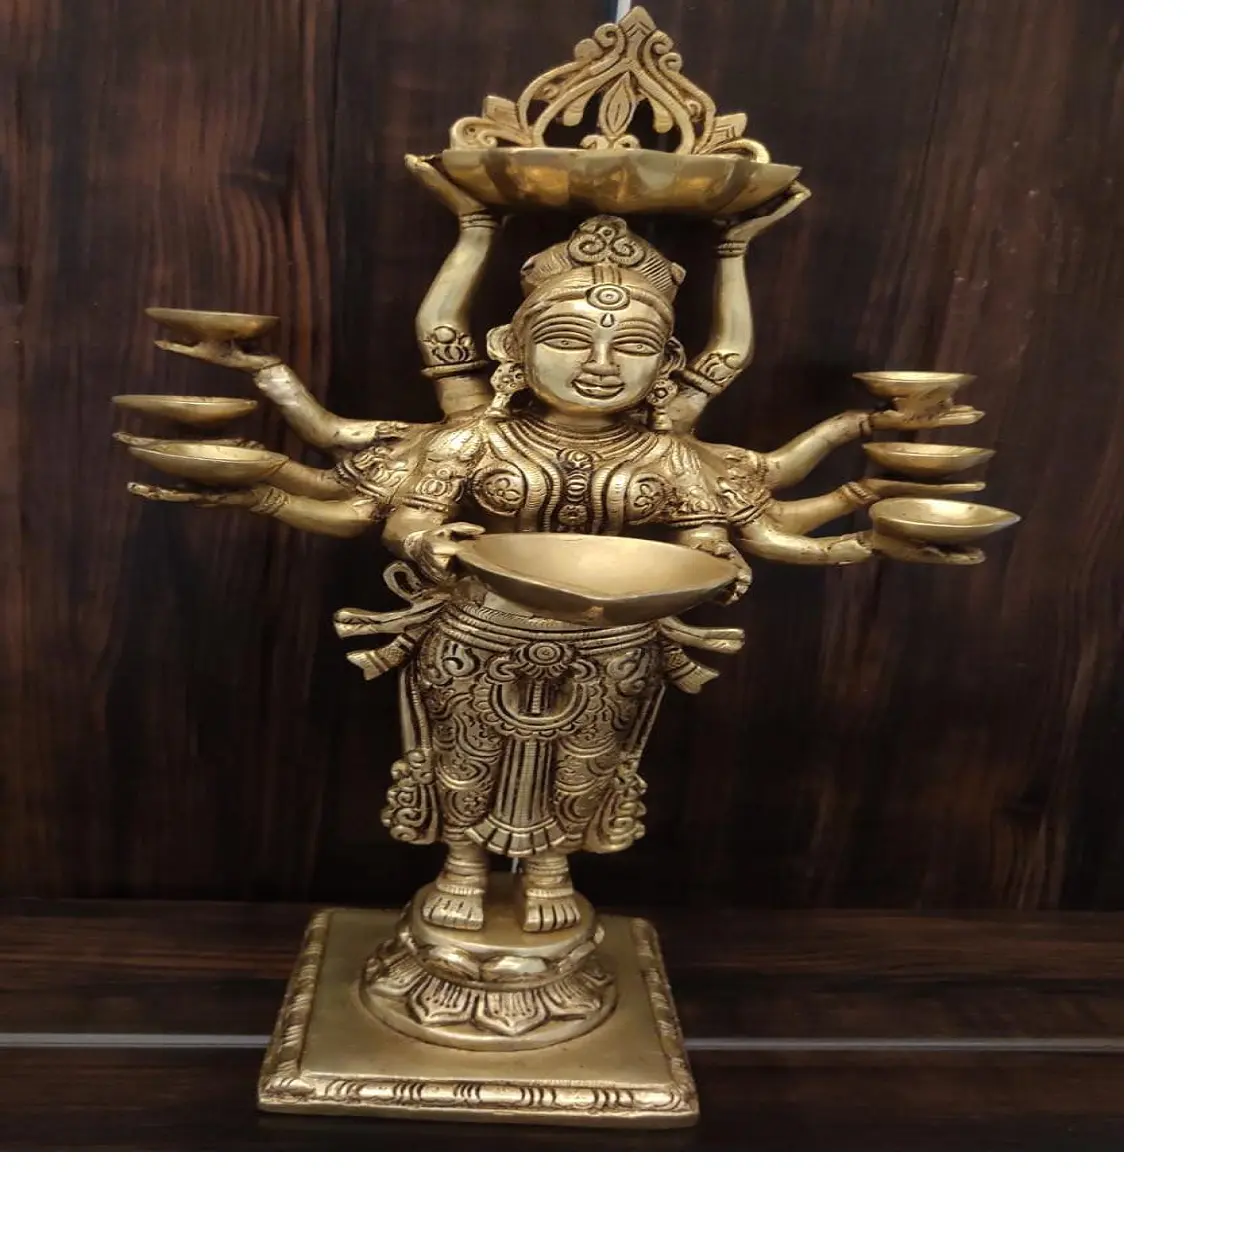 تماثيل برونزية تقليدية وجذابة جدًا من آلهة هندية يمكن استخدامها كمصابيح زيت للزينة المنزلية